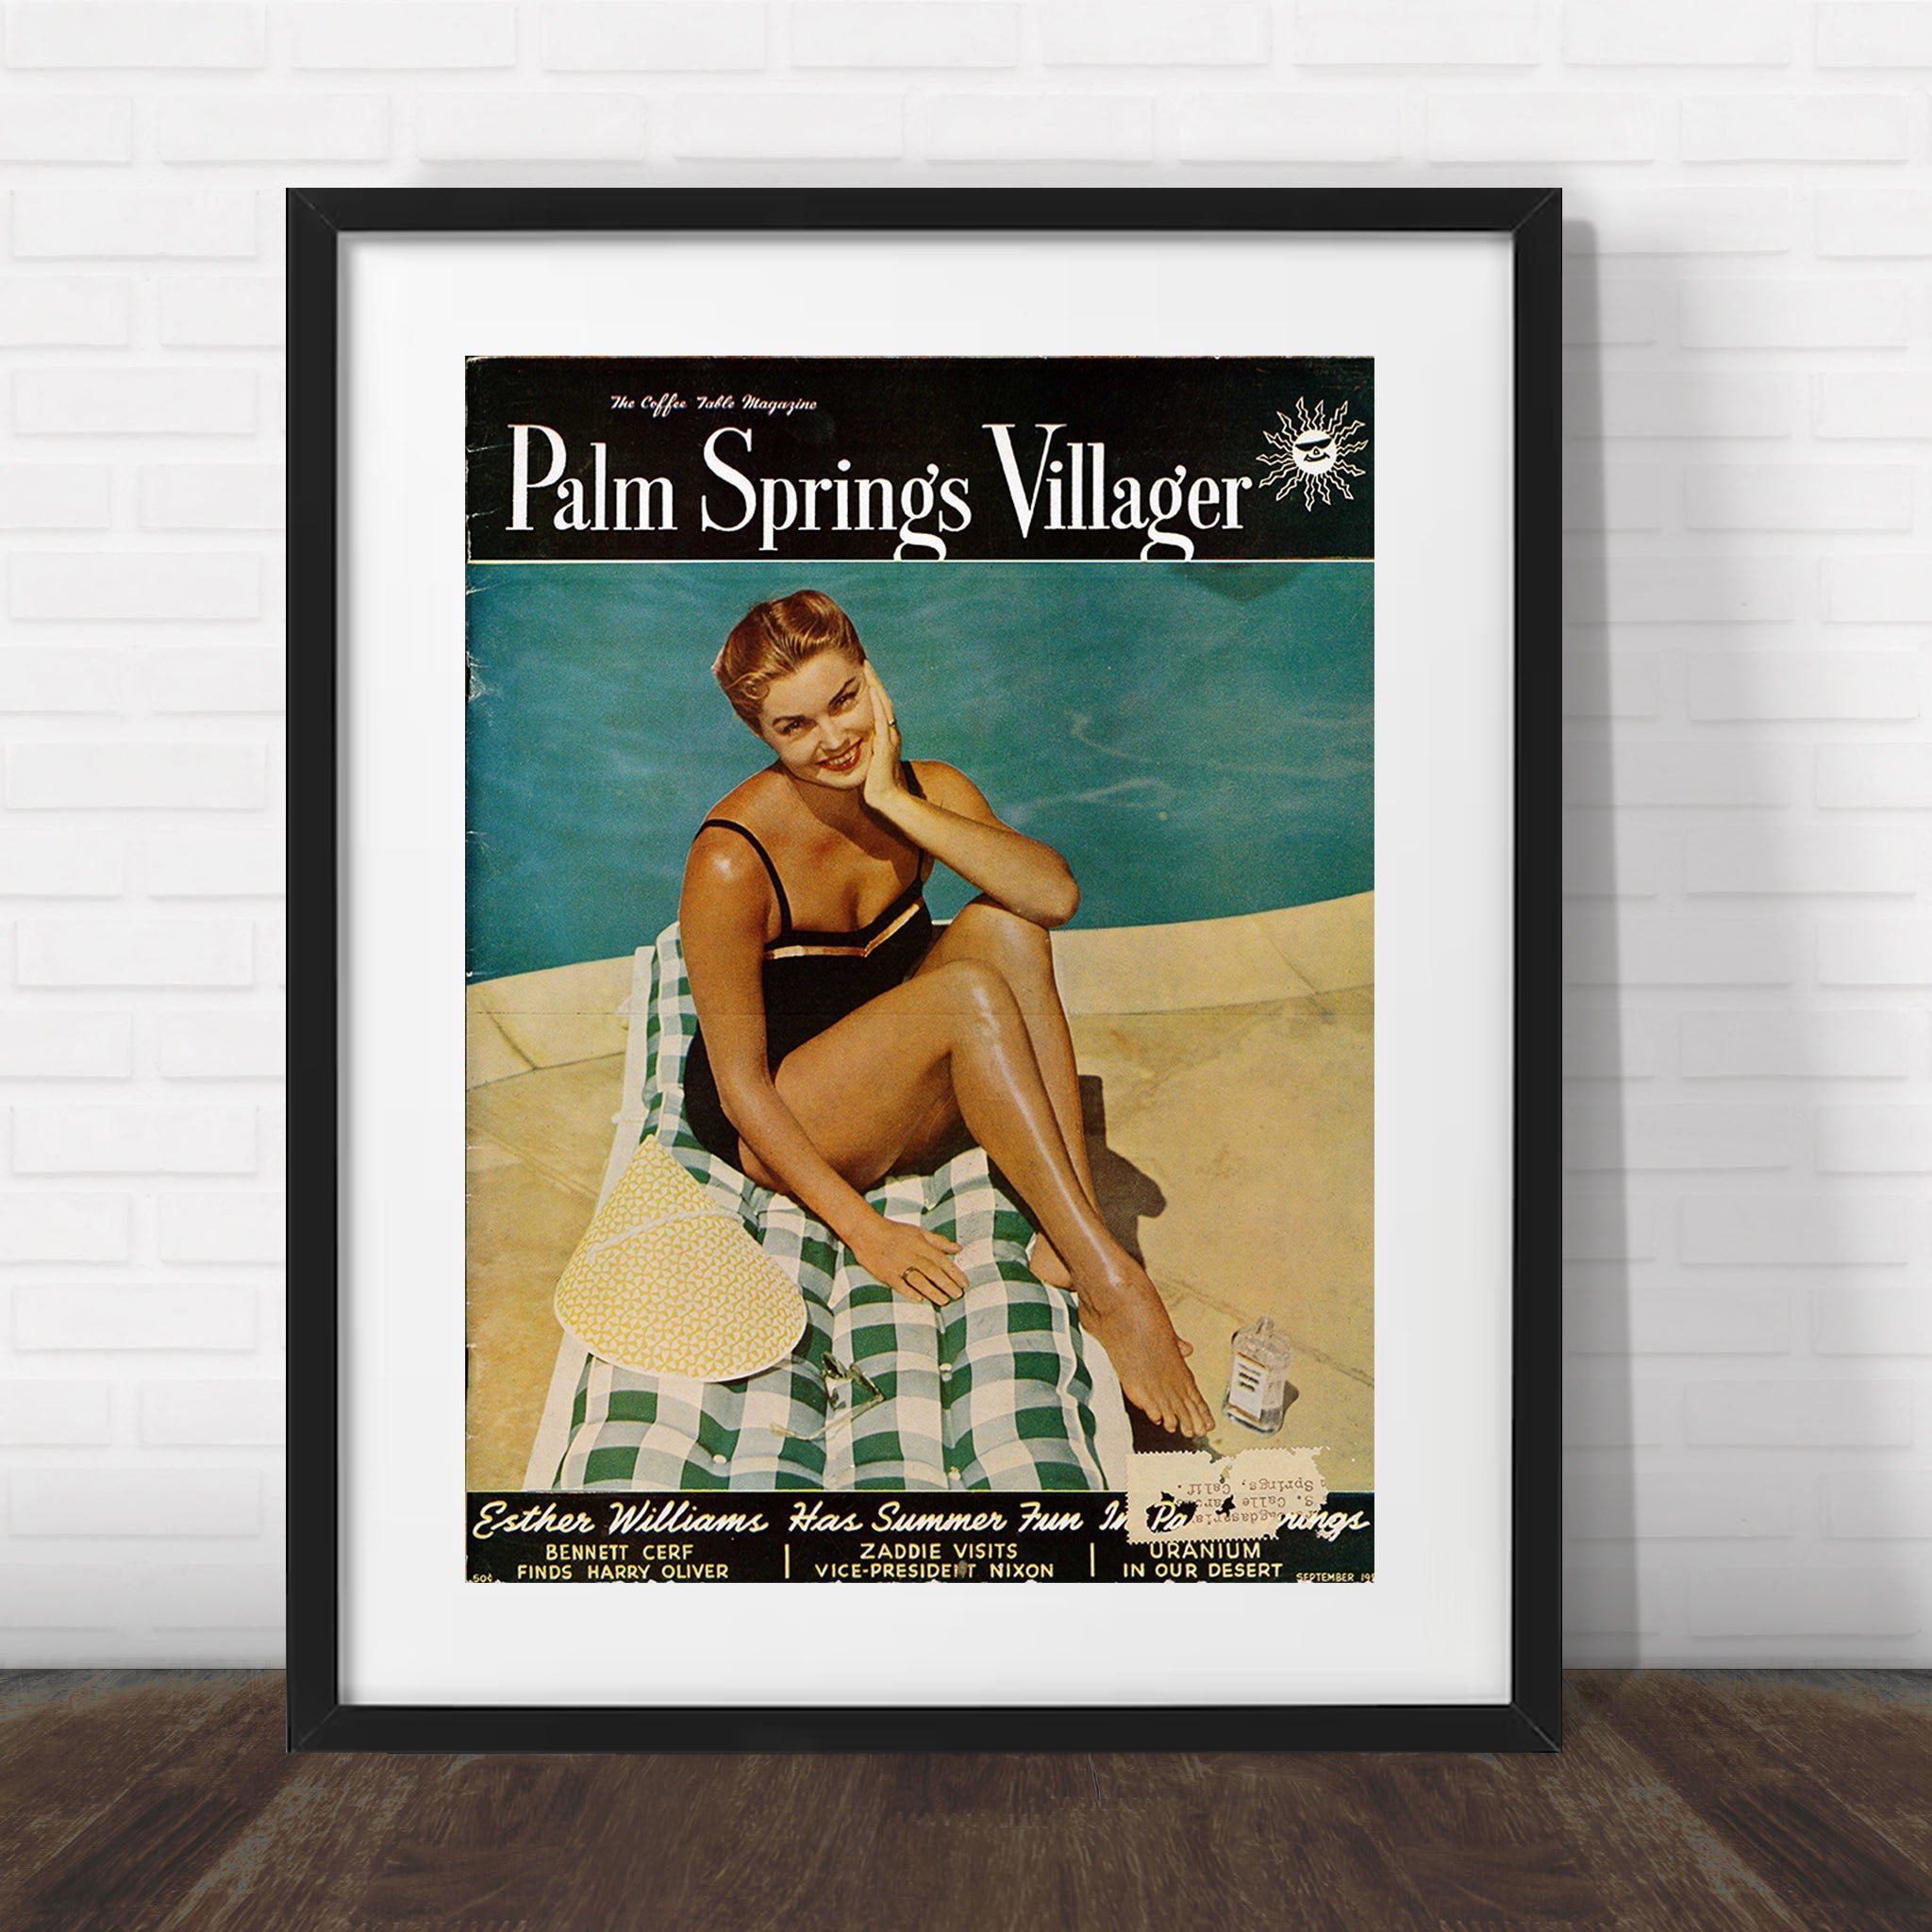 Palm Springs Villager - September 1955 - Cover Poster